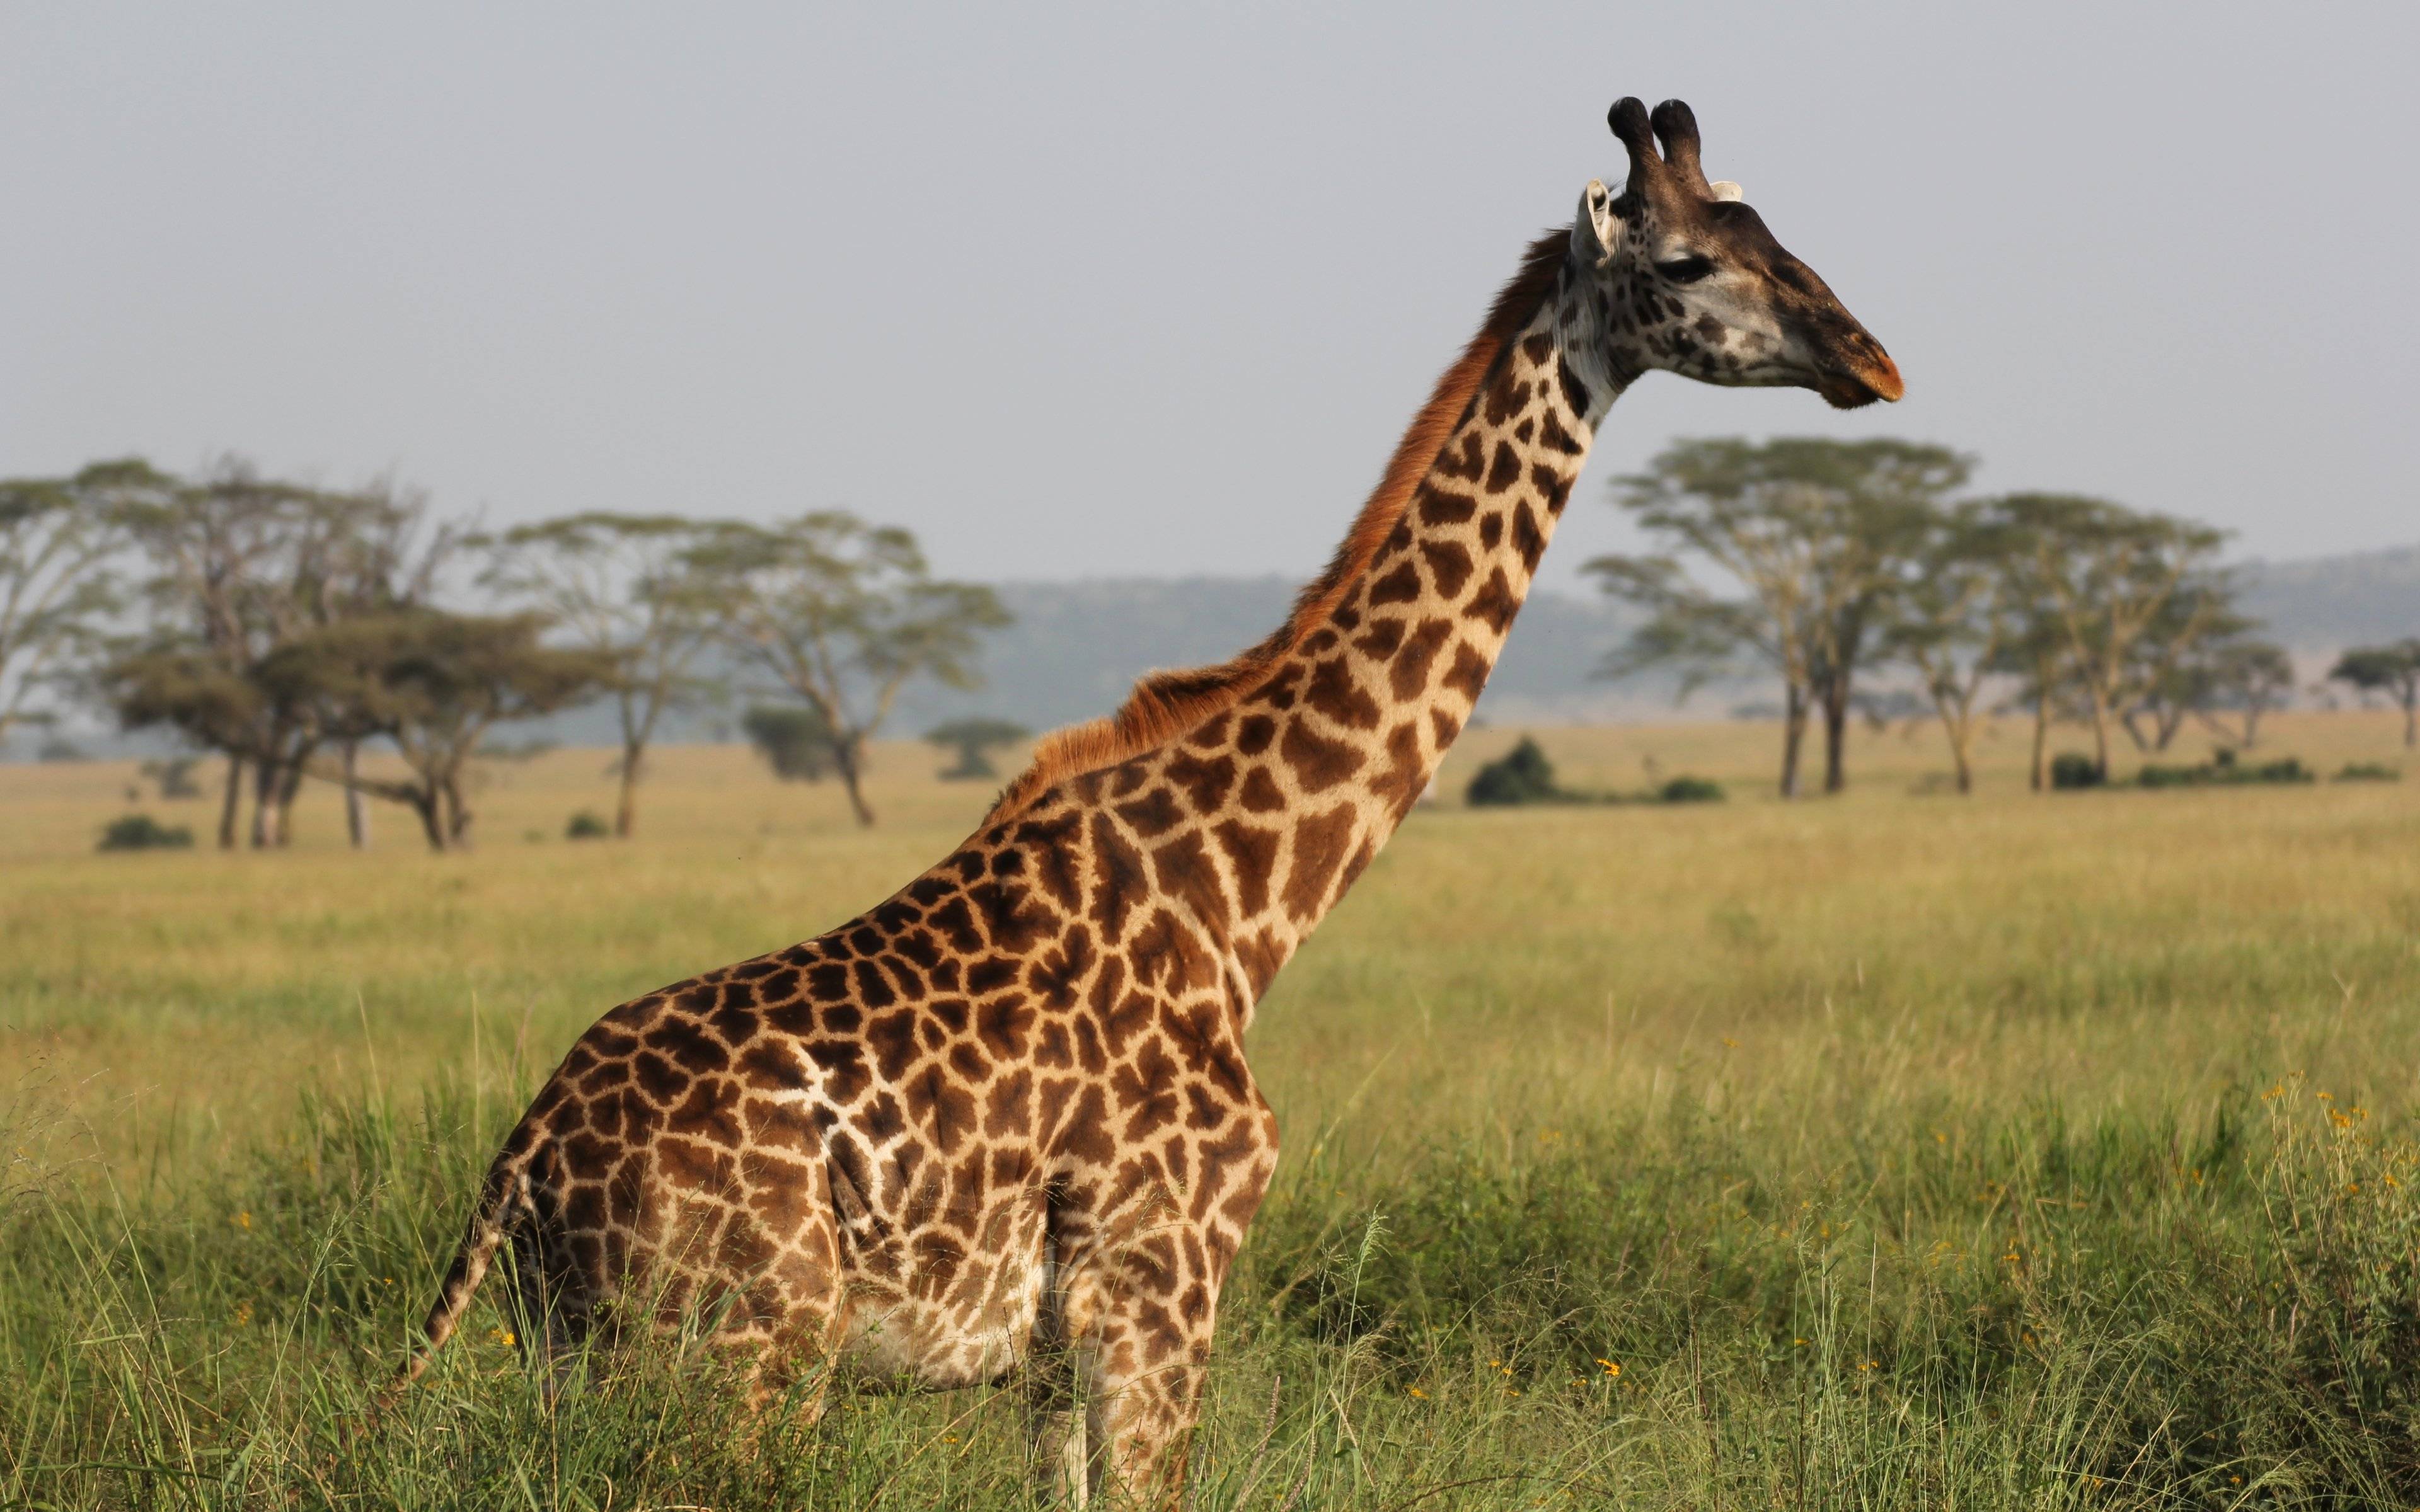 Op weg naar de uitgestrekte vlakes van de Serengeti